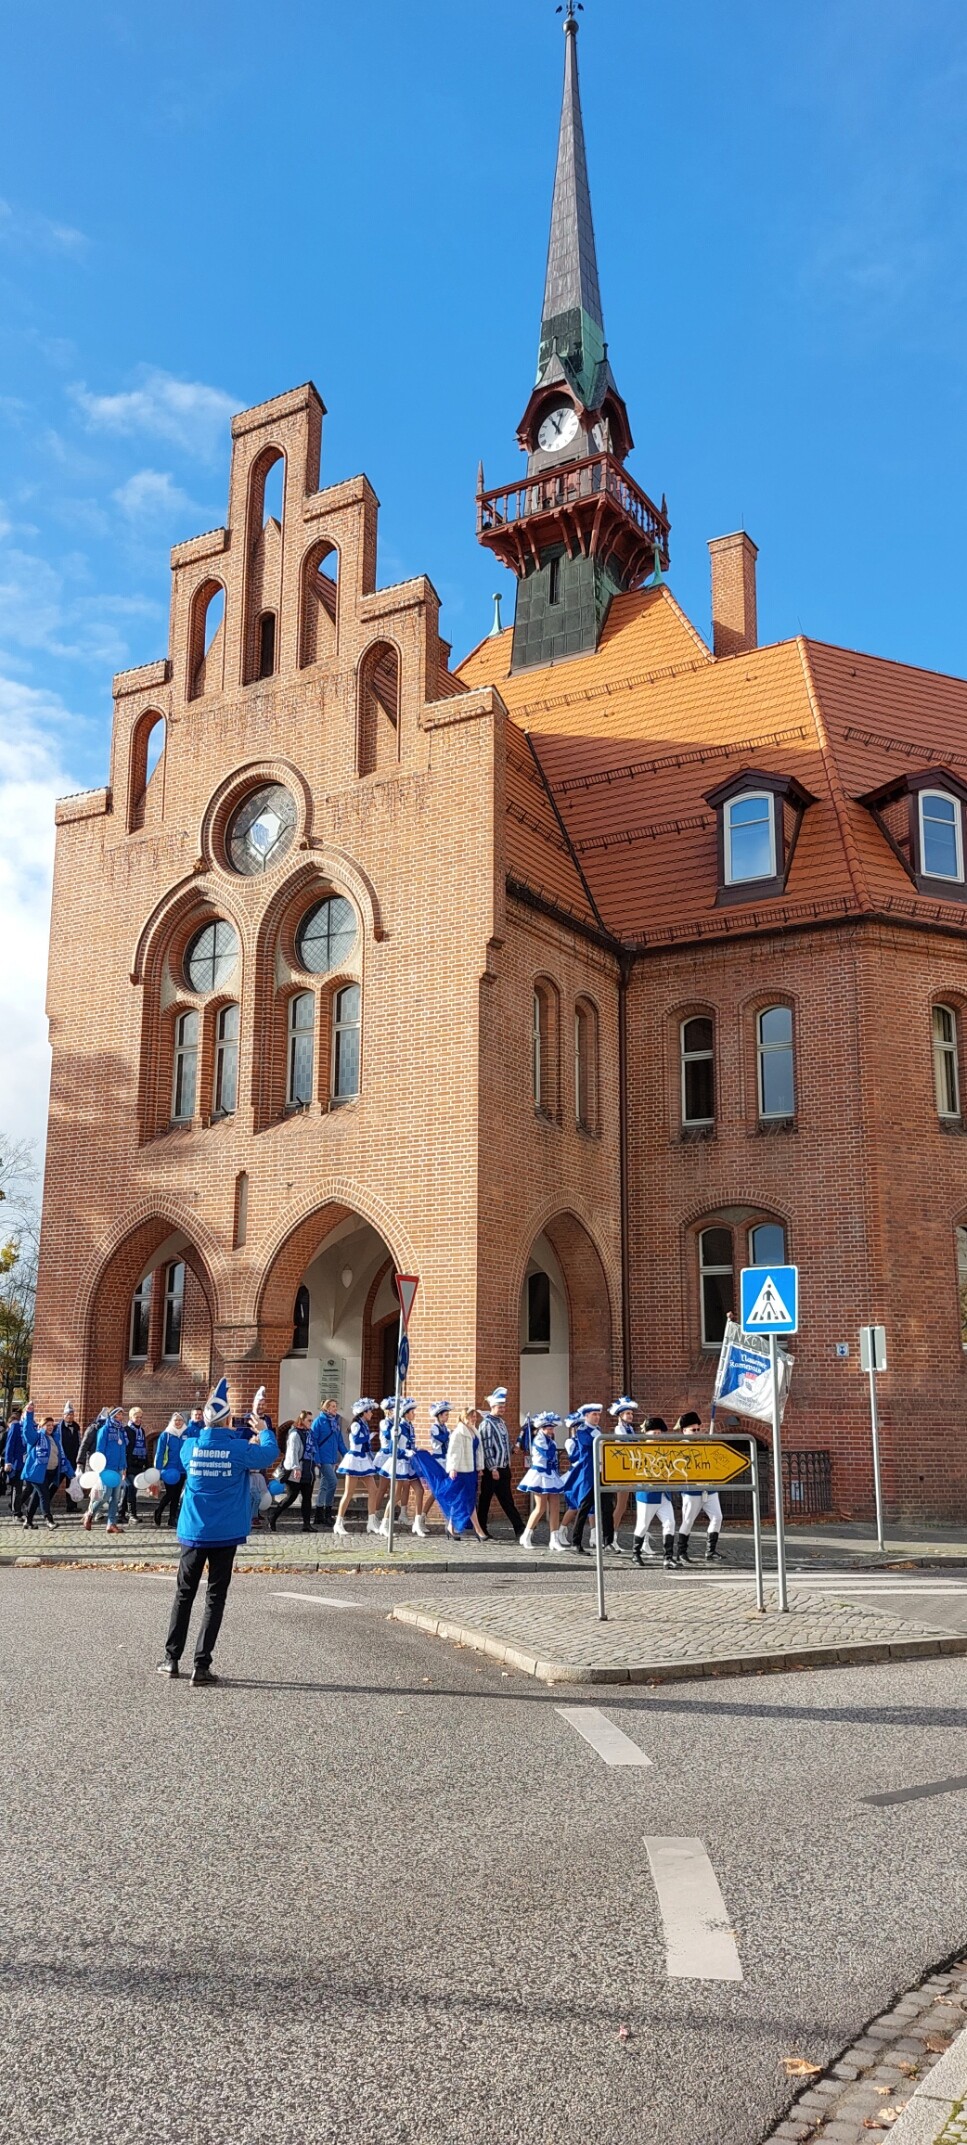 vor dem Rathaus Nauen marschieren die Mitglieder des Karnevalvereins in blau-weißen Kostümen